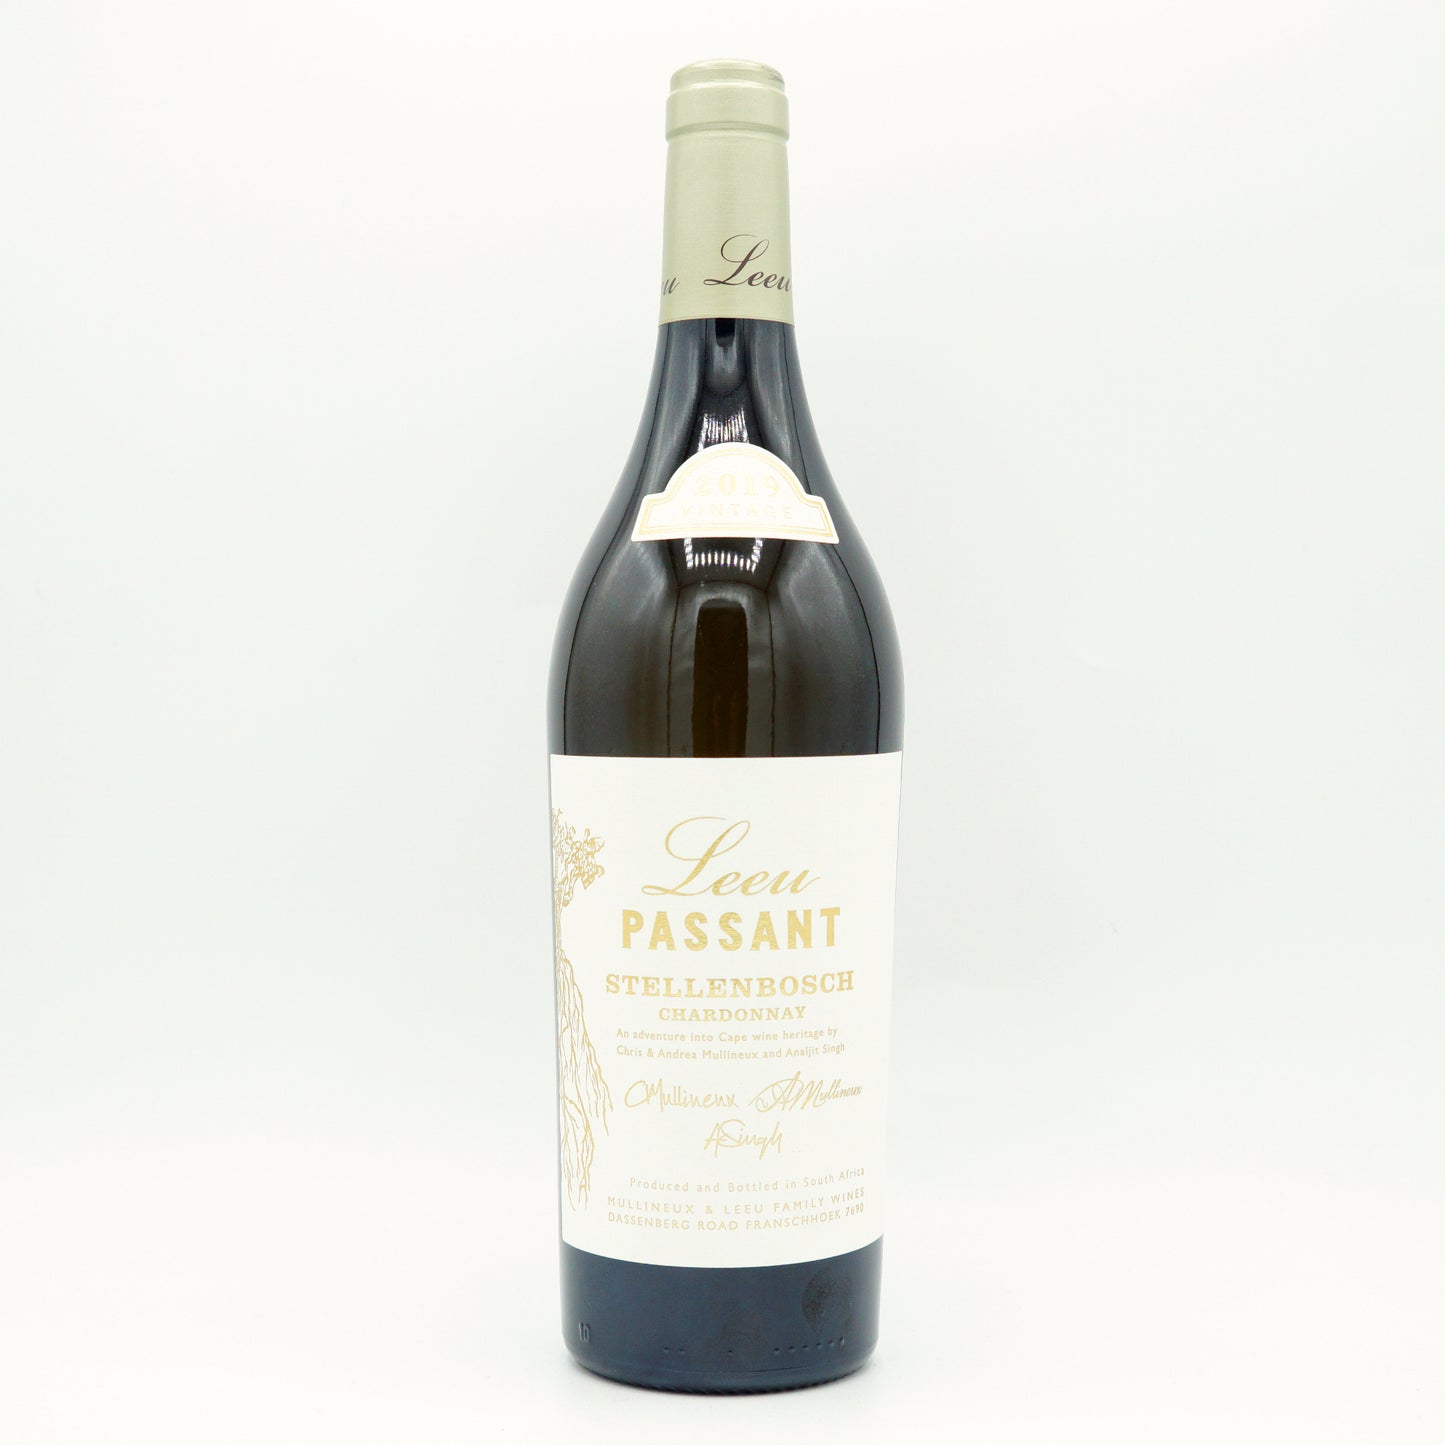 Leeu Passant, Stellenbosch Chardonnay